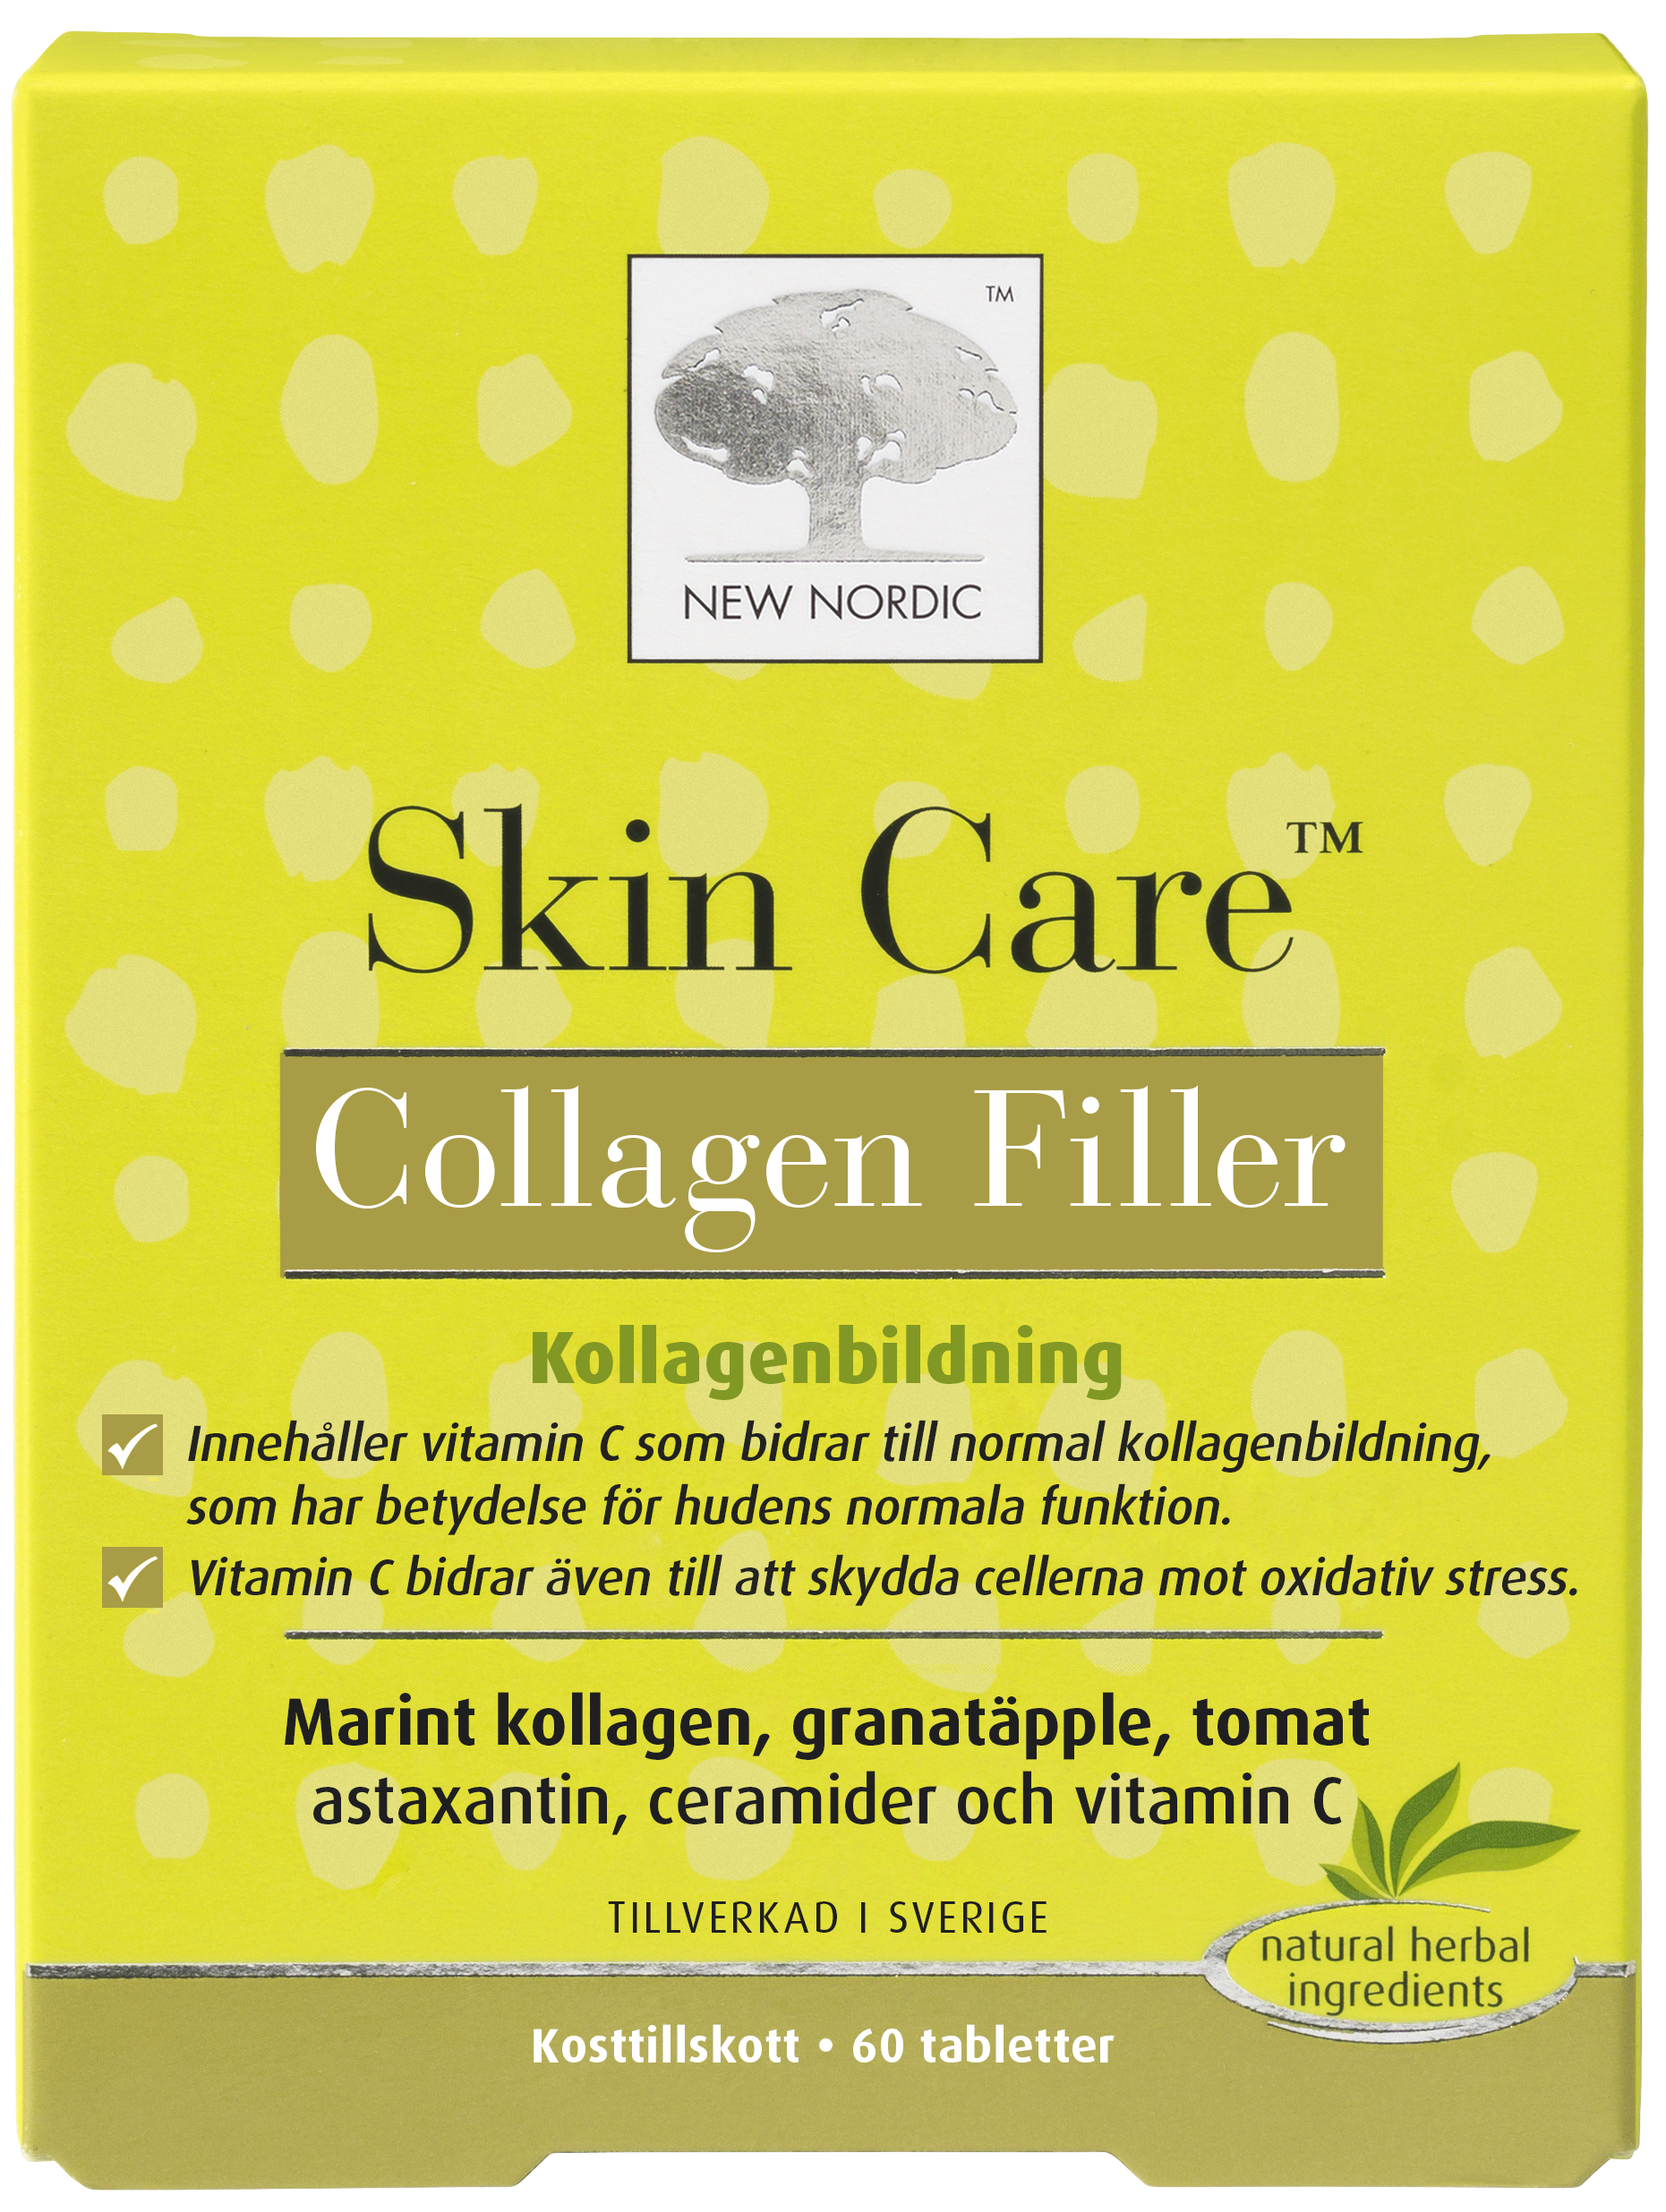 New Nordic Skin Care Collagen Filler Tablett 60st